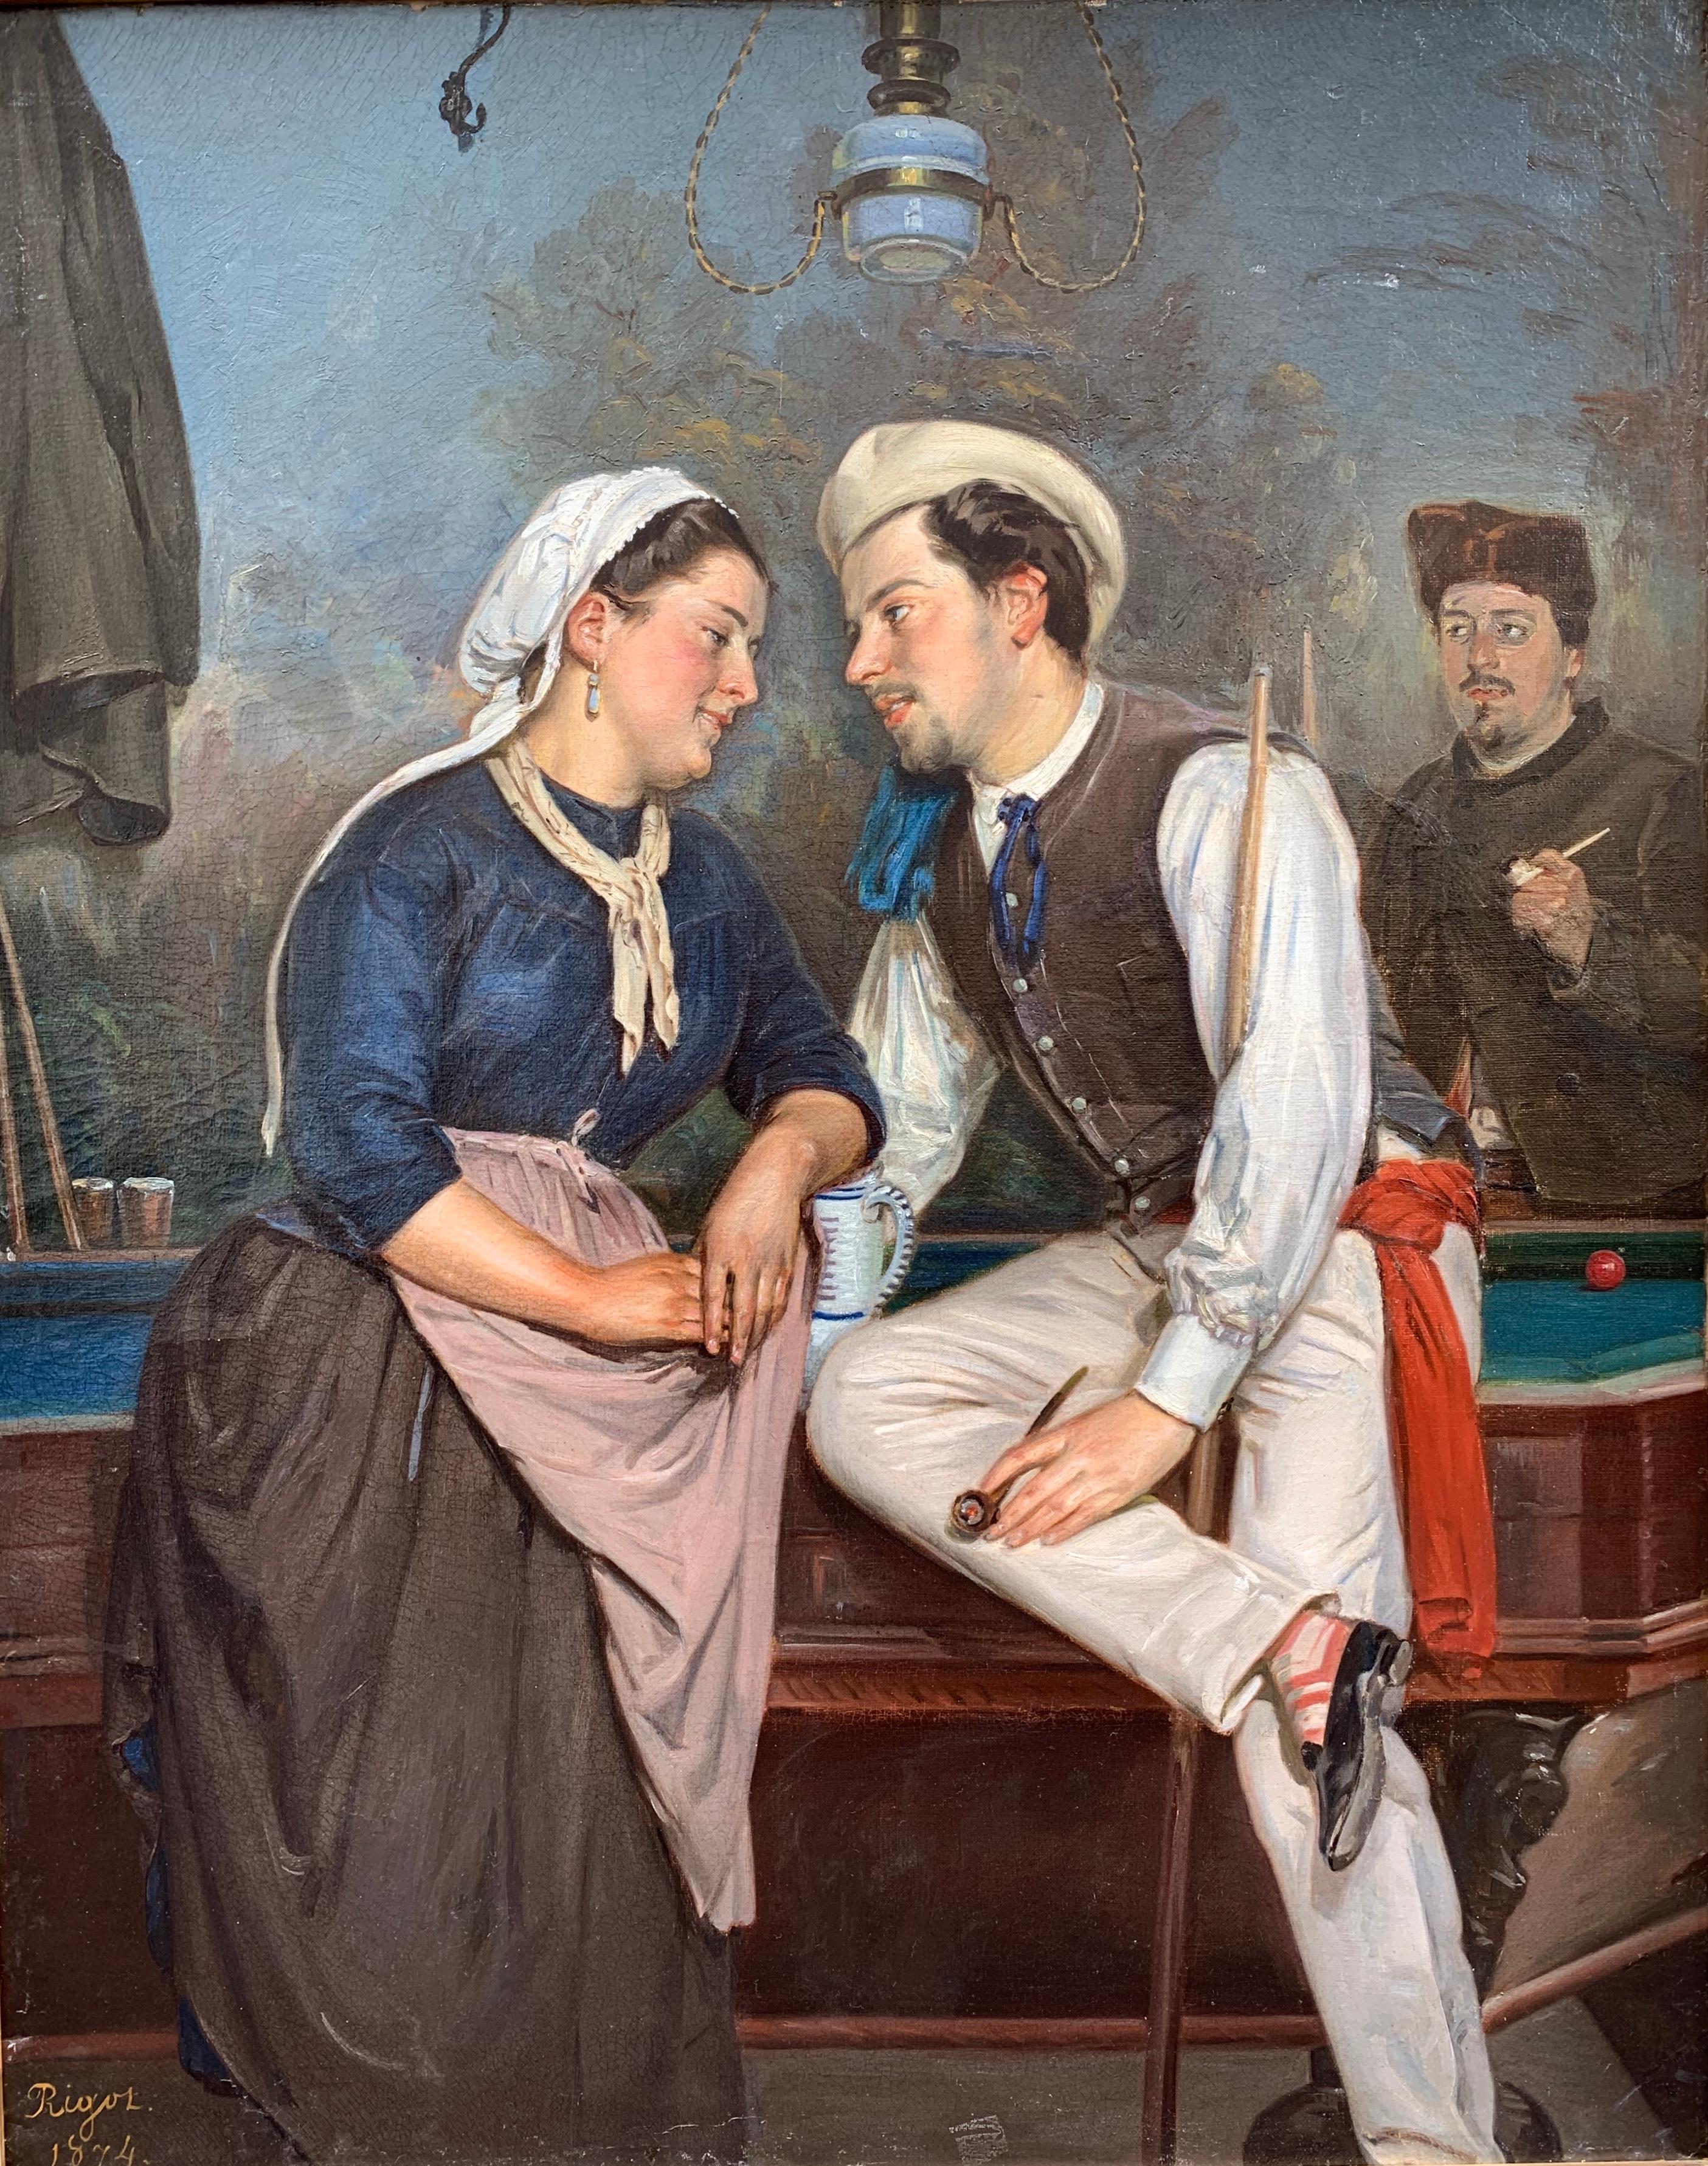 Interior Painting Unknown - Huile sur toile « Gallantry Scene in a Tavern » signée Rigot et datée de 1874